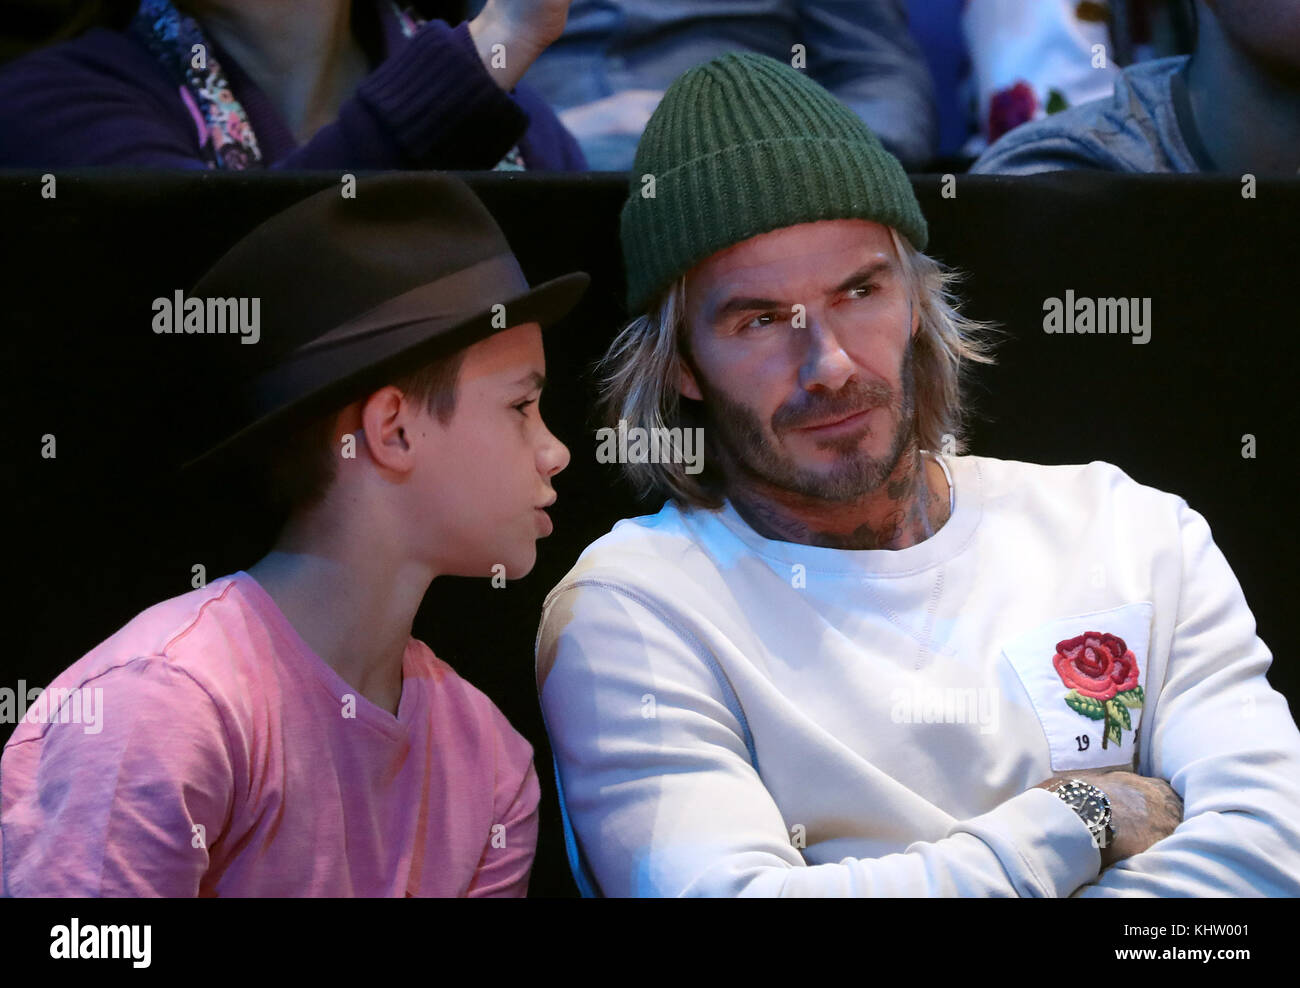 Romeo Beckham e David Beckham sono tra i partecipanti durante la finale singola maschile durante l'ottavo giorno delle finali del NITTO ATP World Tour all'O2 Arena di Londra. Foto Stock